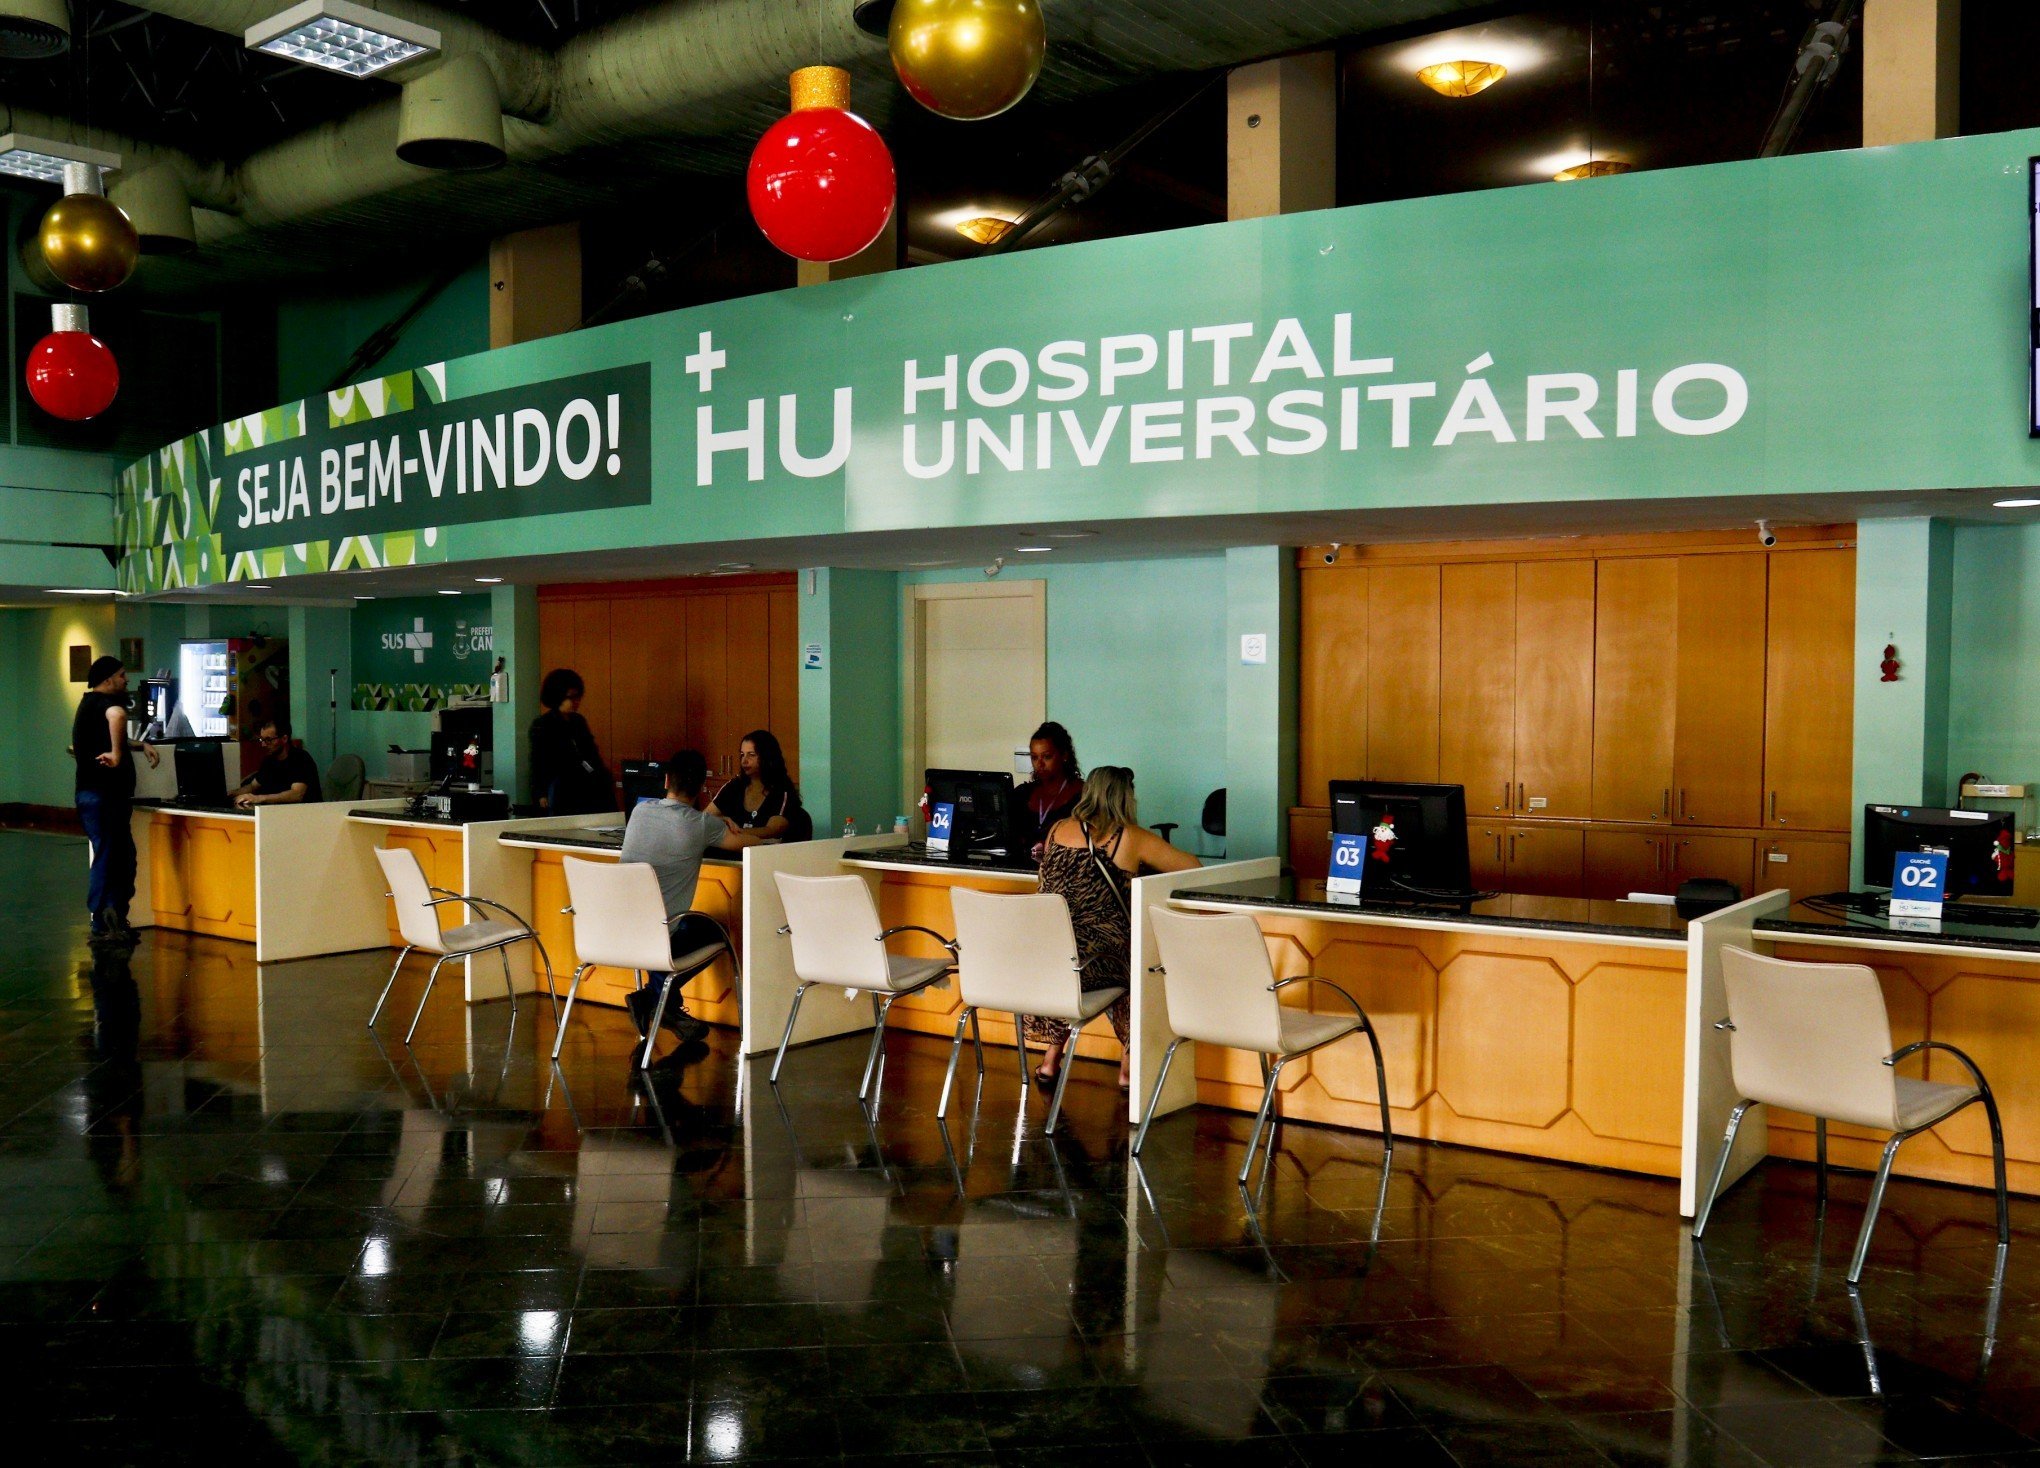 Hospital Universitário possui R$ 36 milhões em dívidas acumuladas